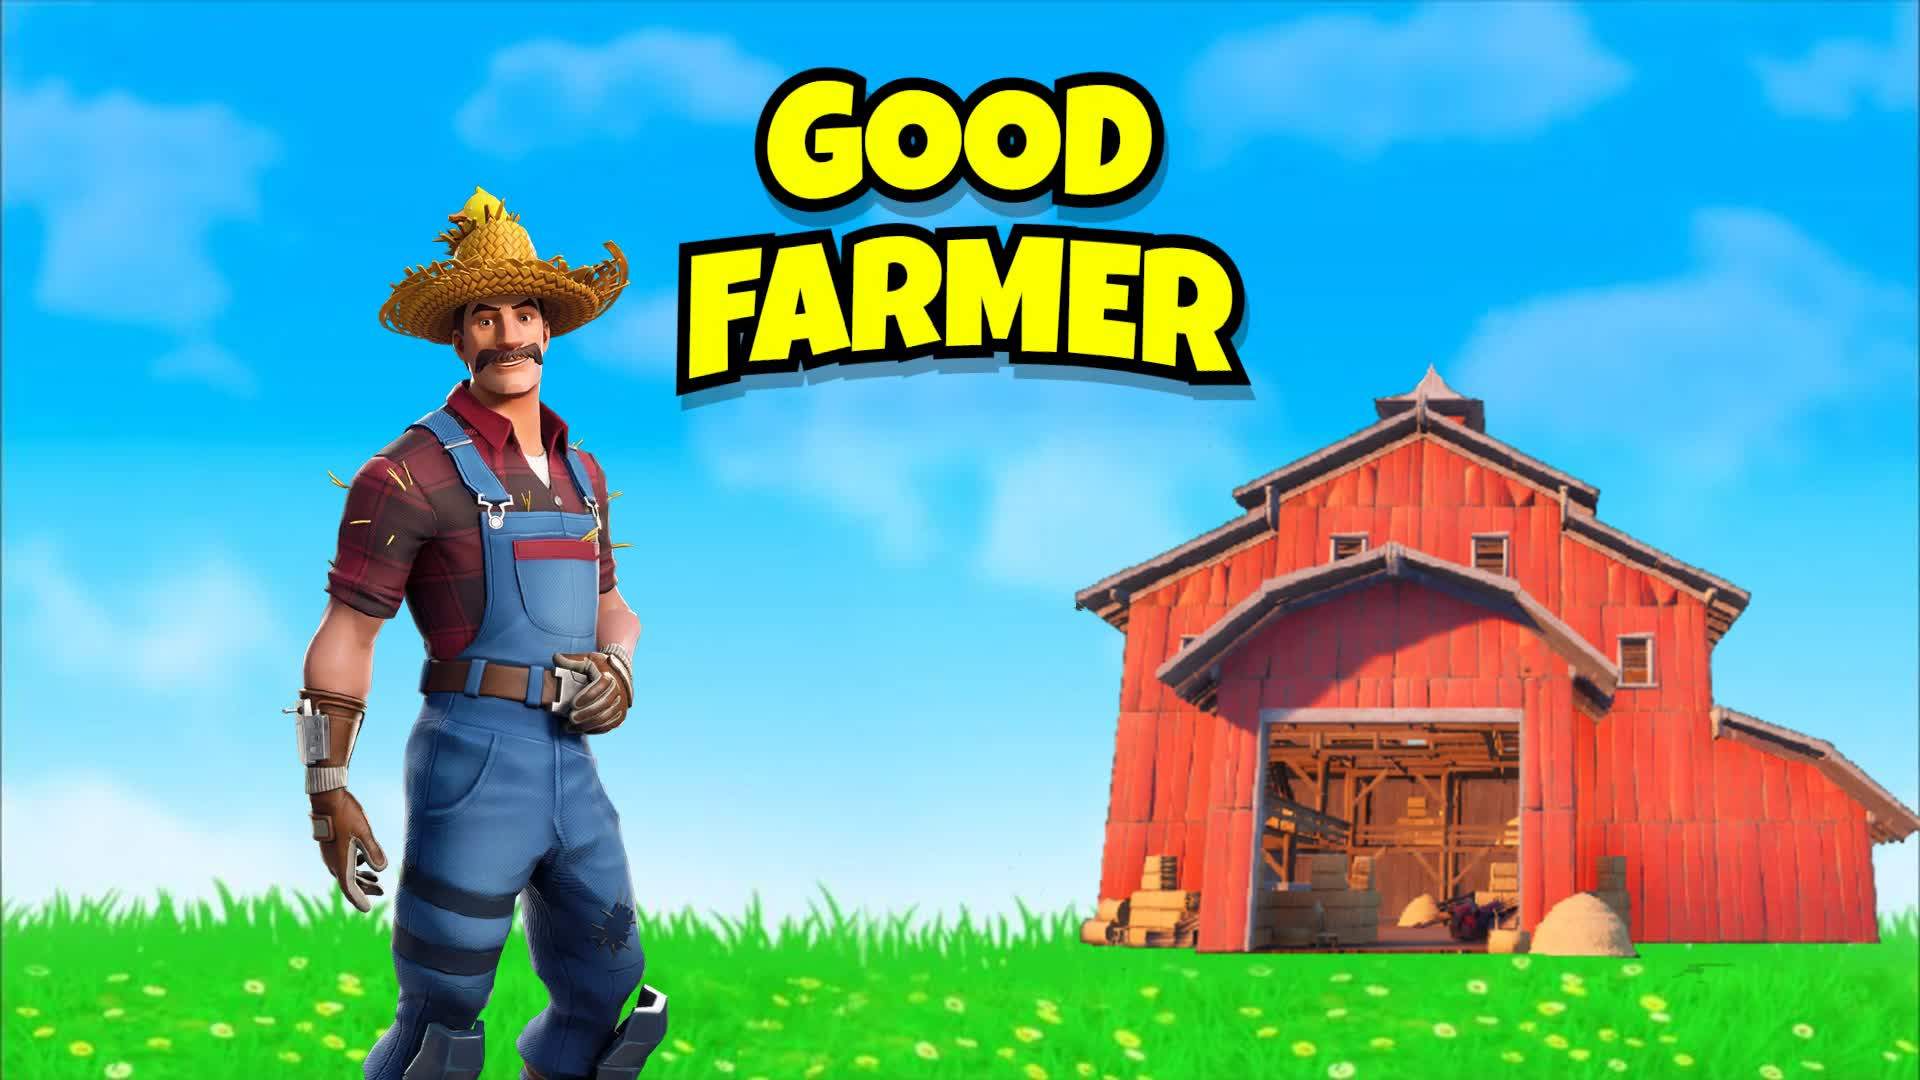 GOOD FARMER BY [EMG]